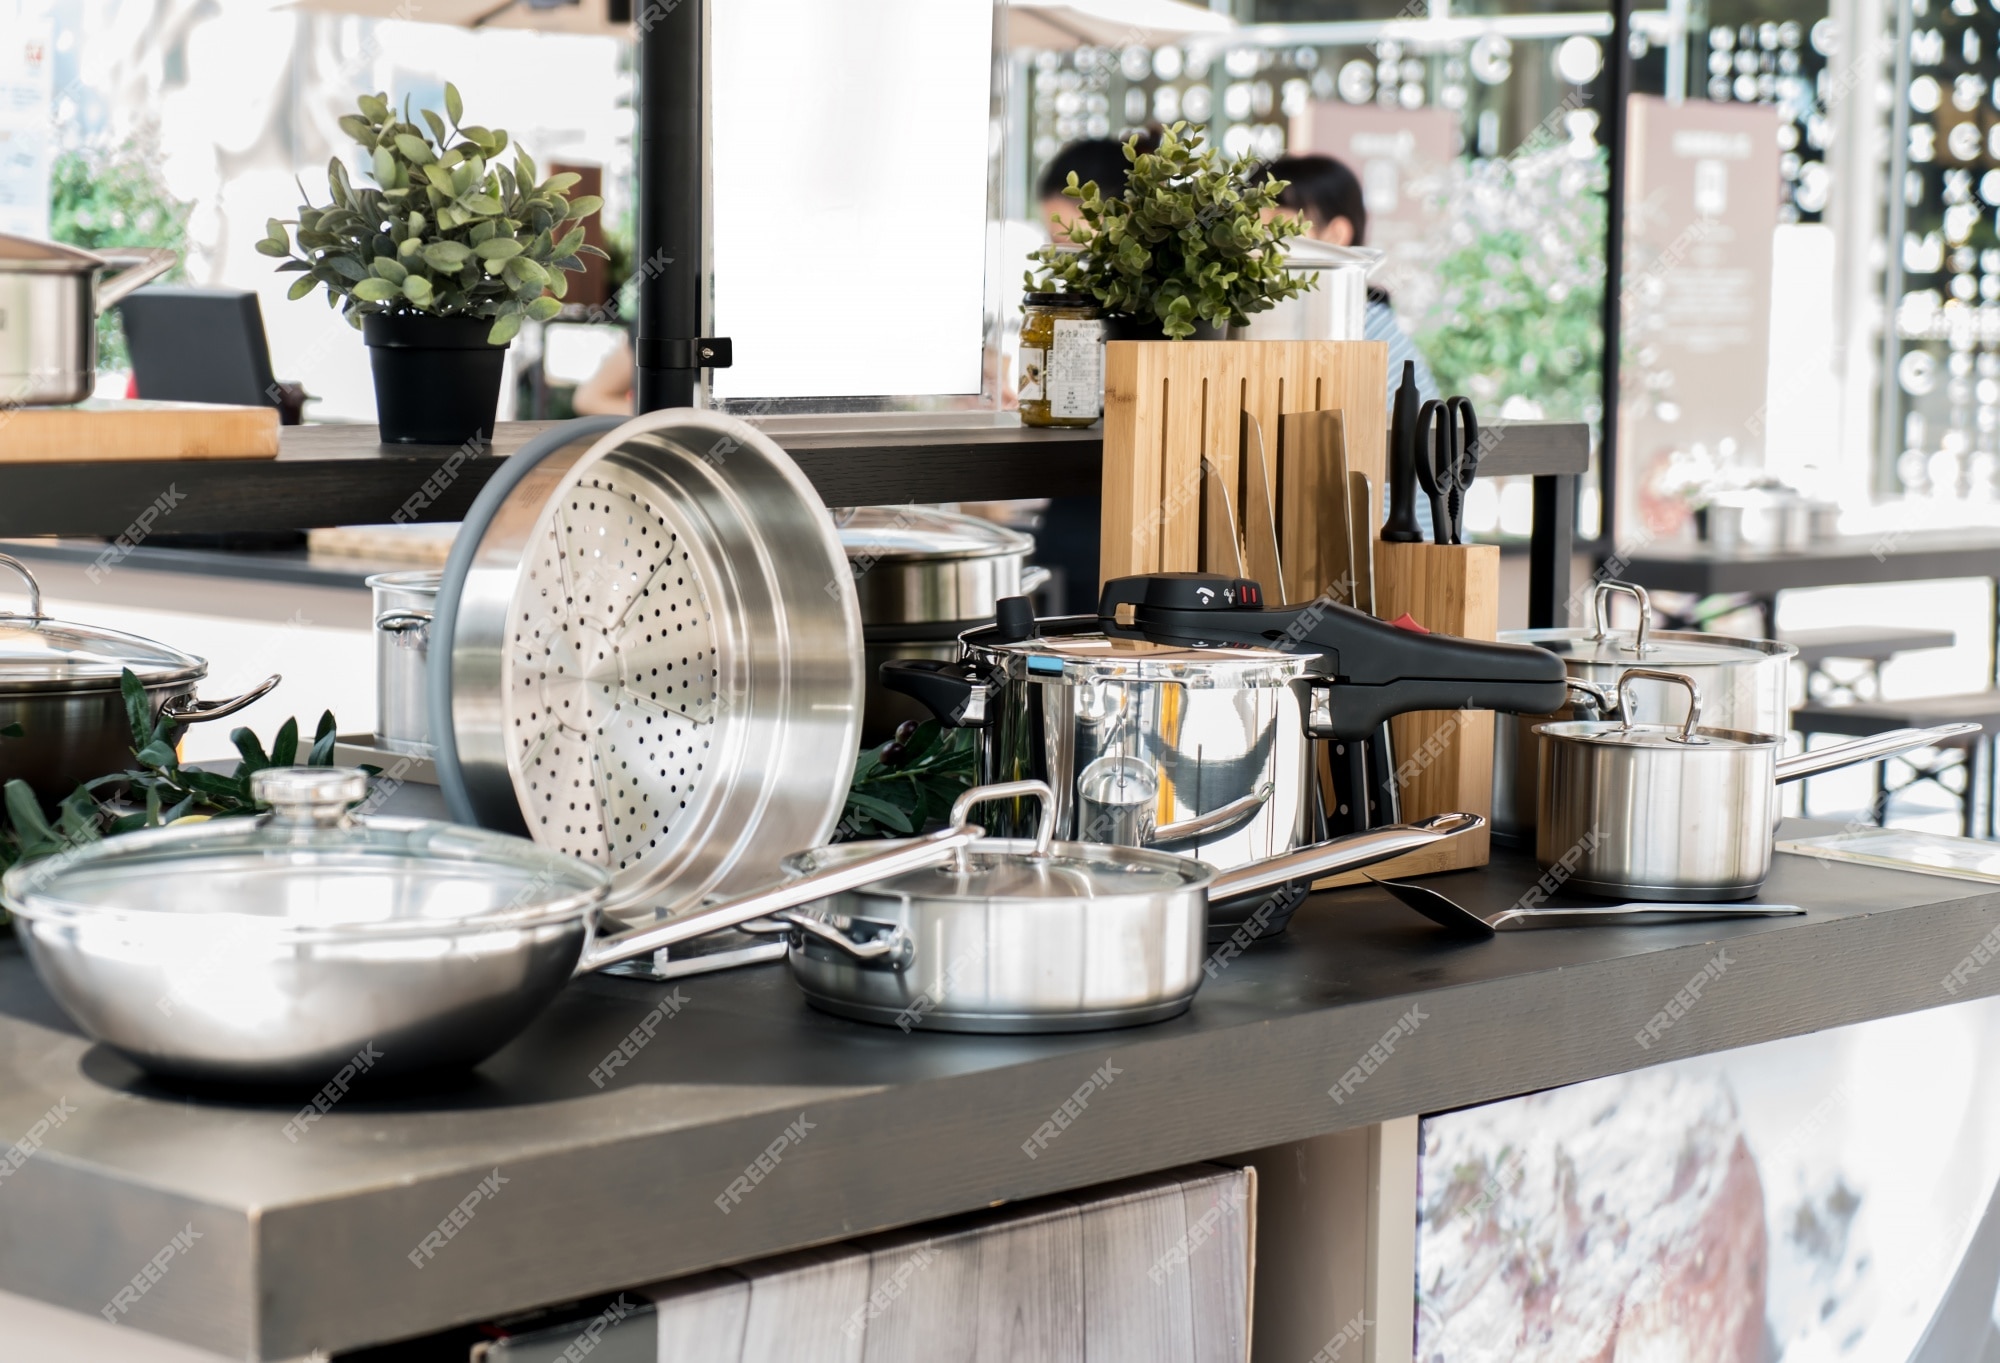 Garfo de Cozinha Mesa Aço Inox é na Utifácil! Casa Cozinha - Utifácil I  Utilidades domésticas inovadoras